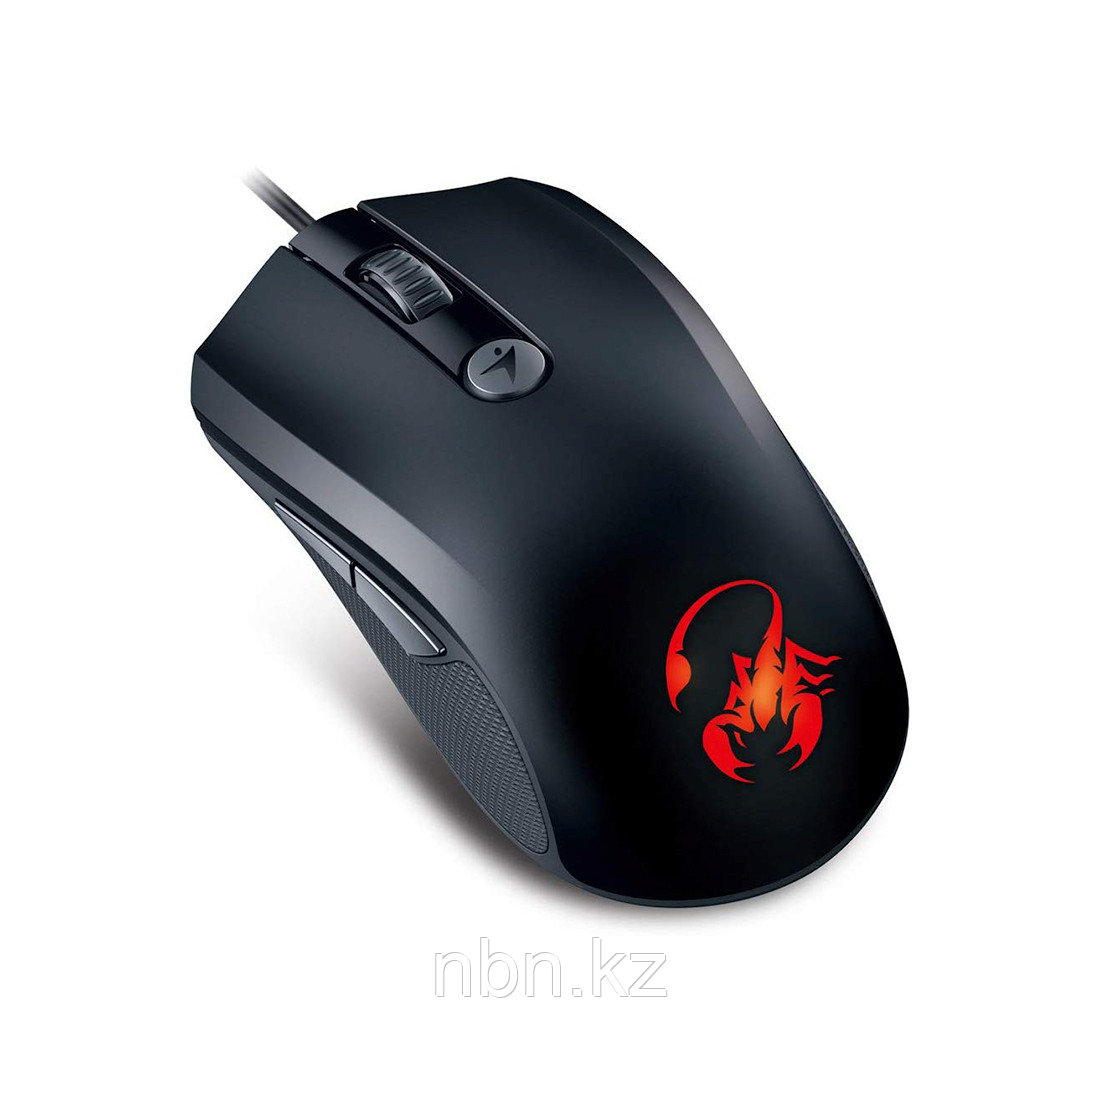 Компьютерная мышь Genius X-G600, фото 1